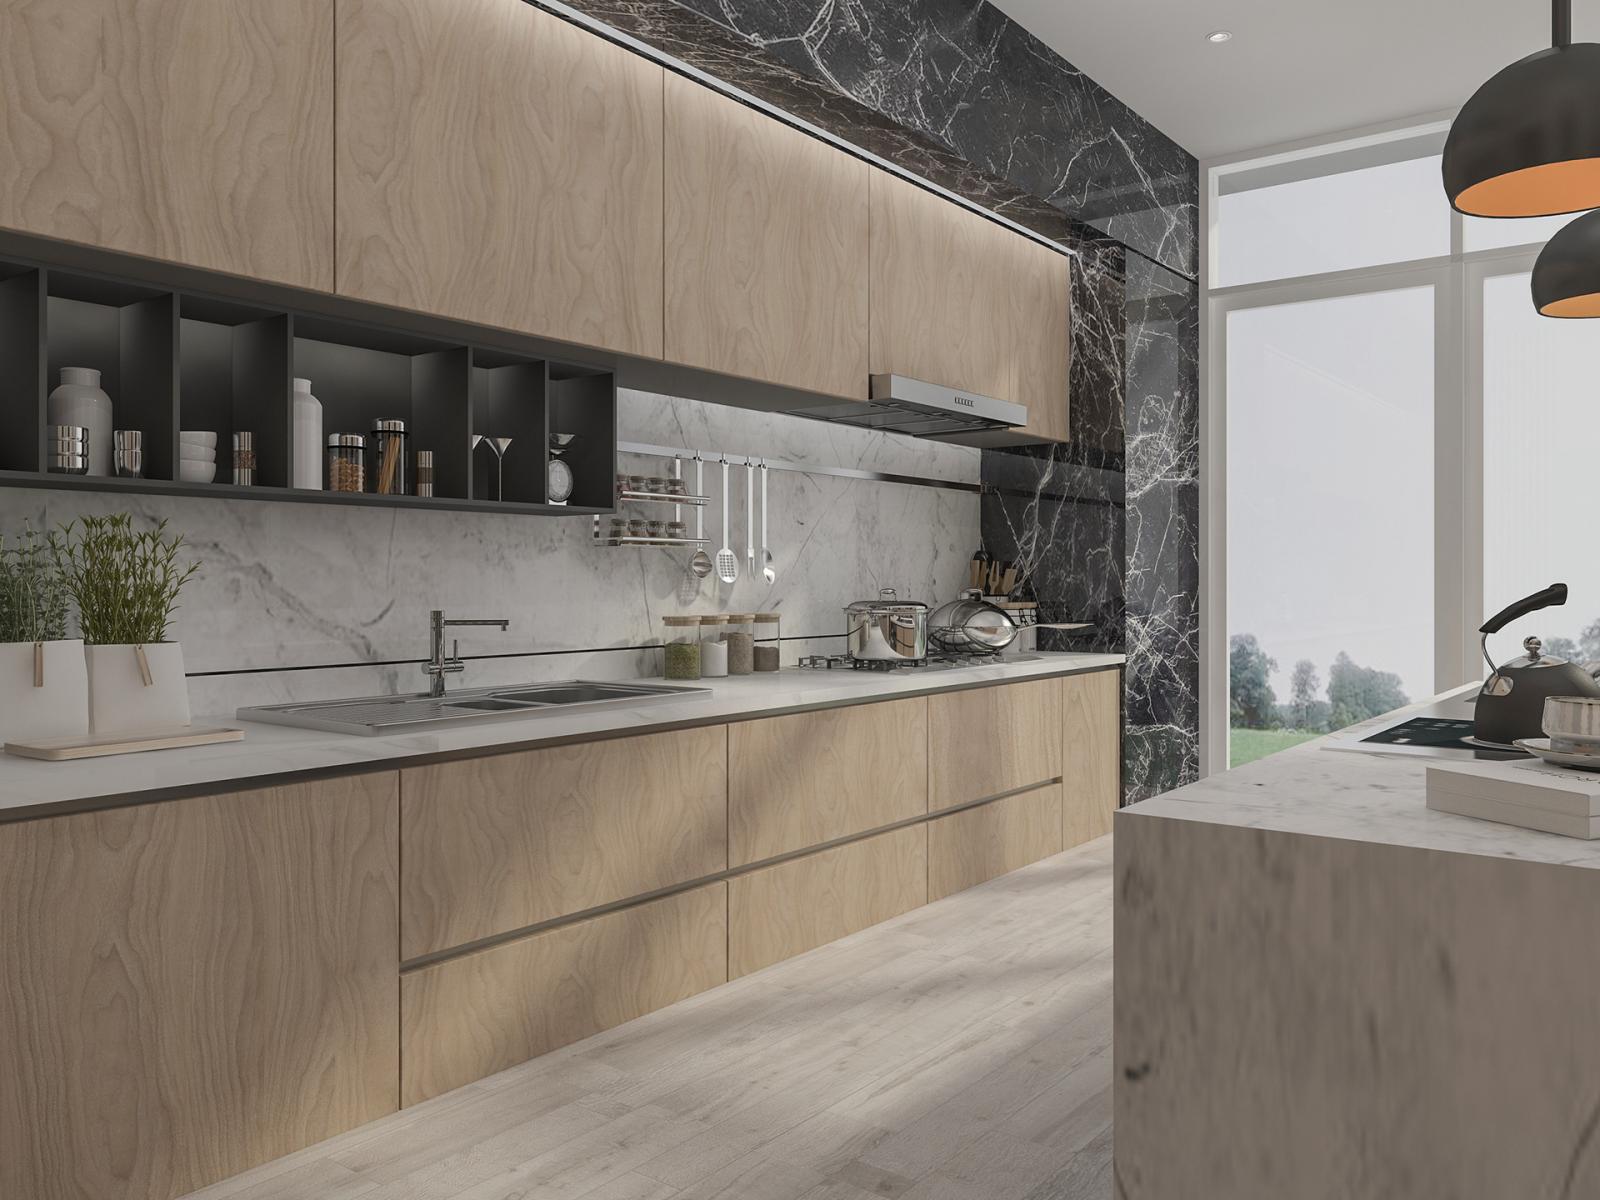 Hình ảnh phòng bếp hiện đại với tủ gỗ, đường viền bằng đá cẩm thạch màu đen sang trọng